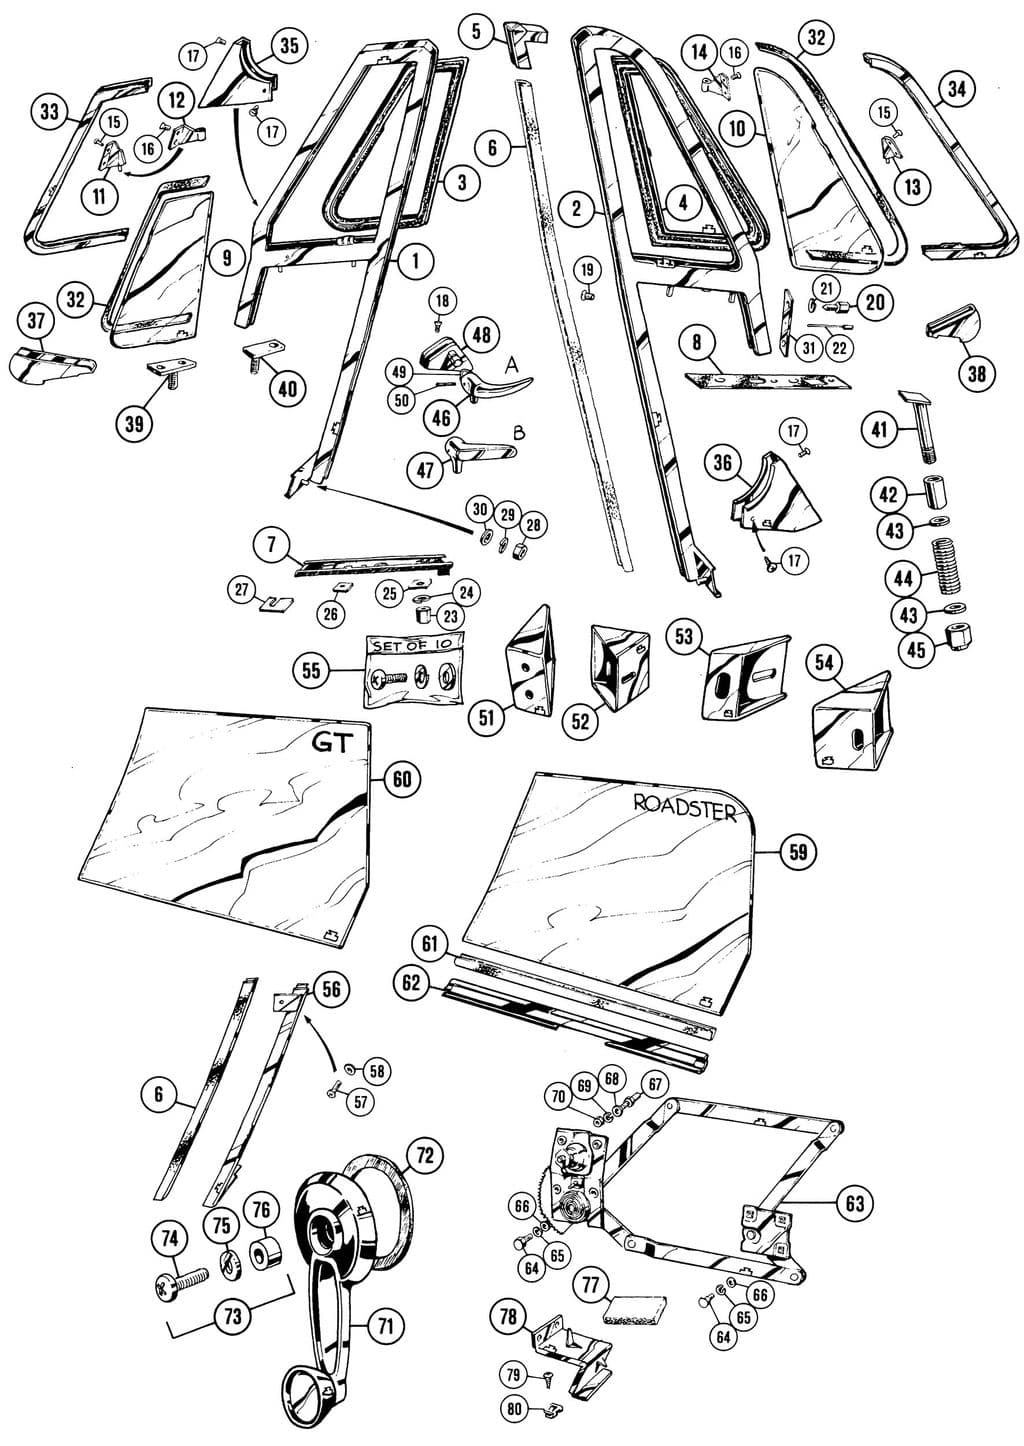 MGC 1967-1969 - Window regulators, motors, winders & parts - 1